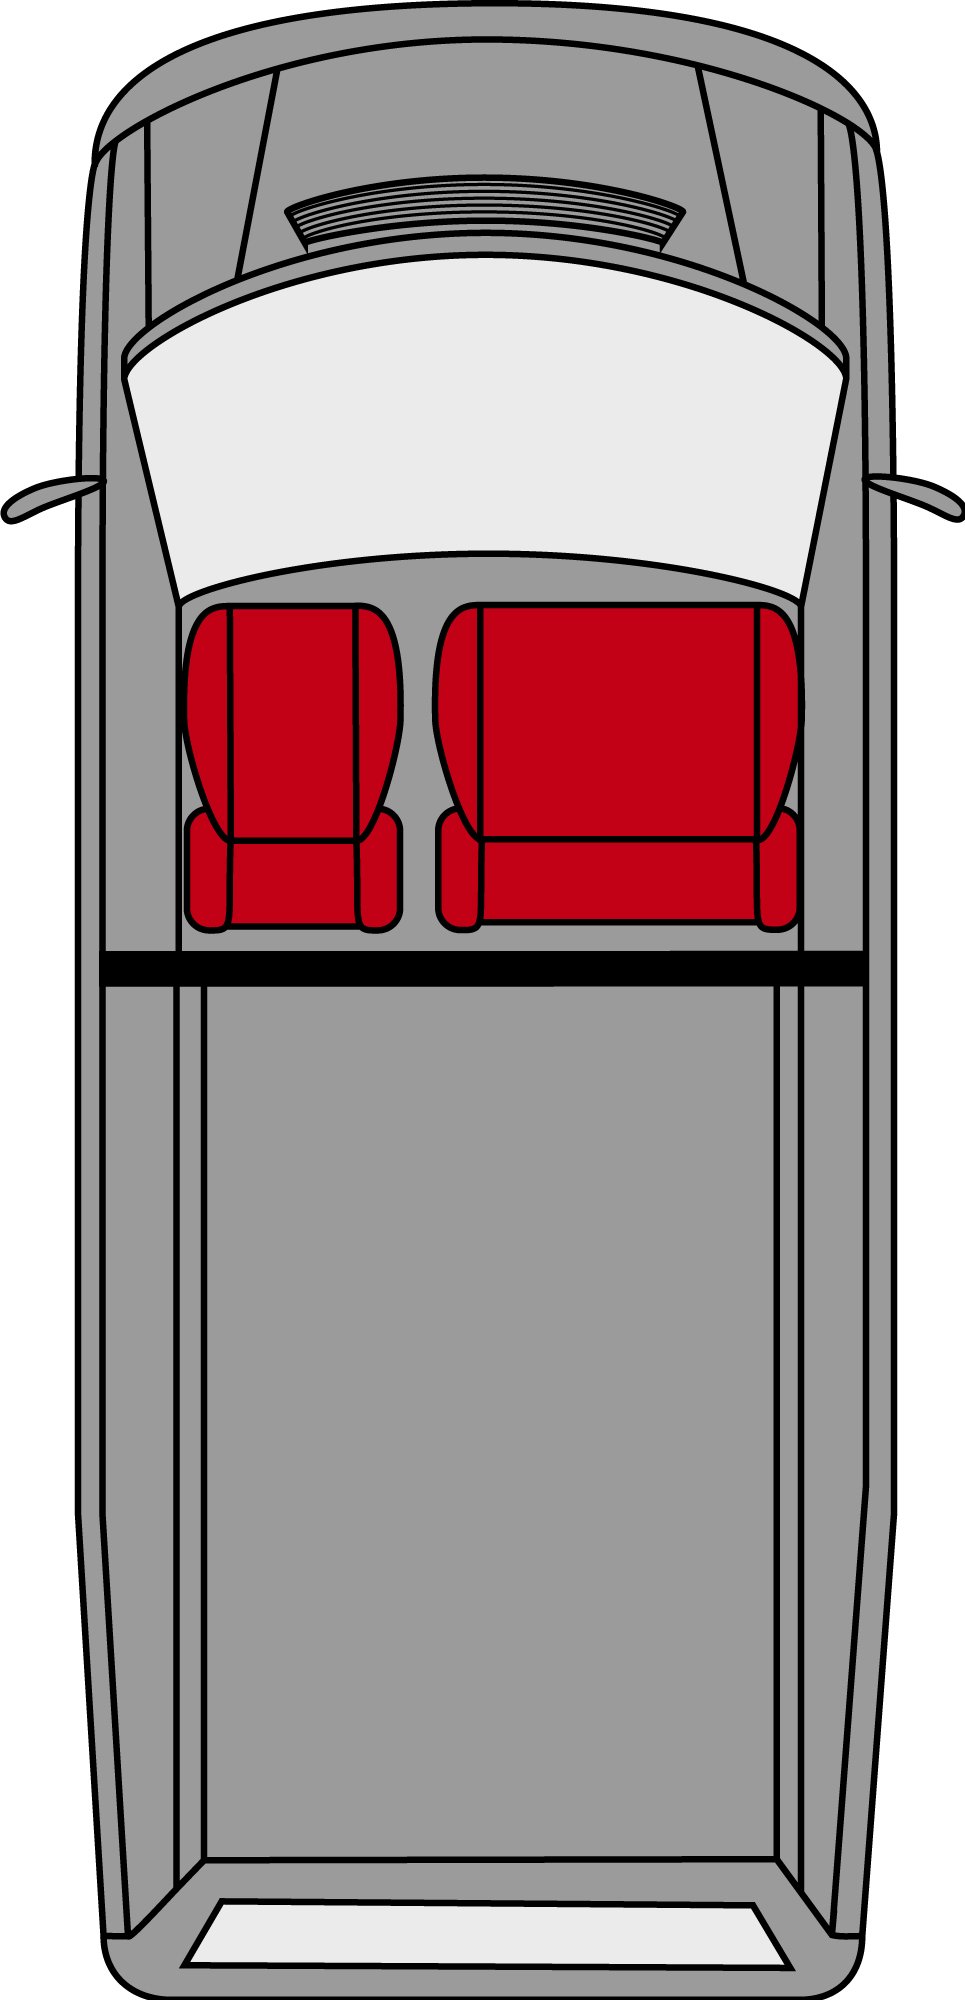 Transporter Coprisedili in tessuto per Opel Movano, Renault Master, Nissan Interstar, sedile singolo e doppio